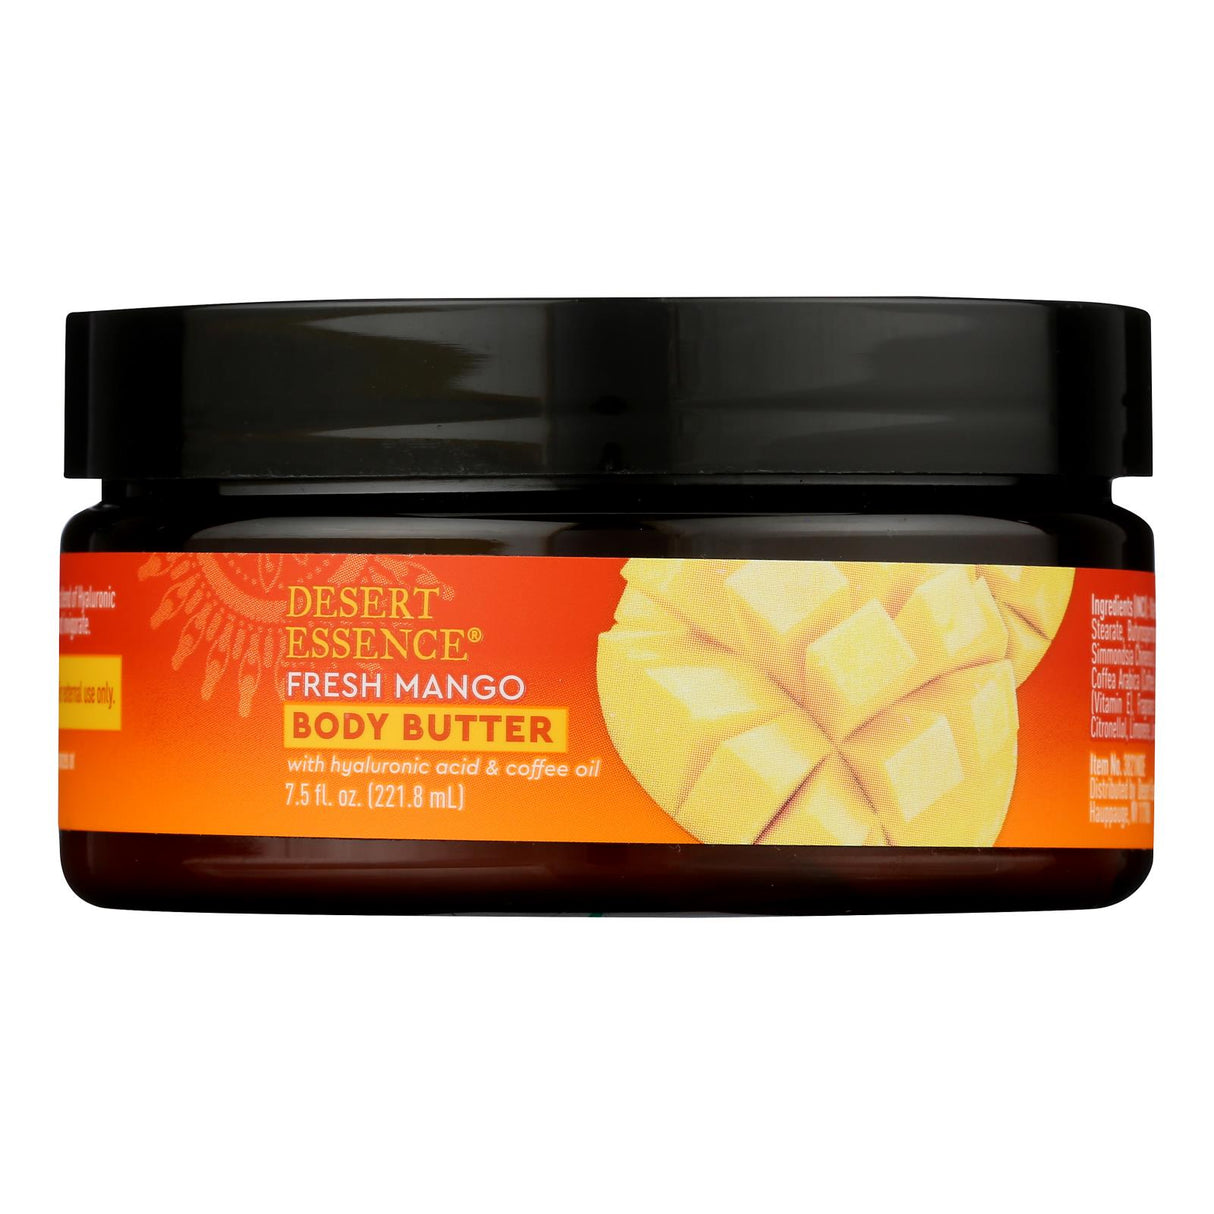 Desert Essence Fresh Mango Body Butter, 7.5 Fl Oz - Cozy Farm 